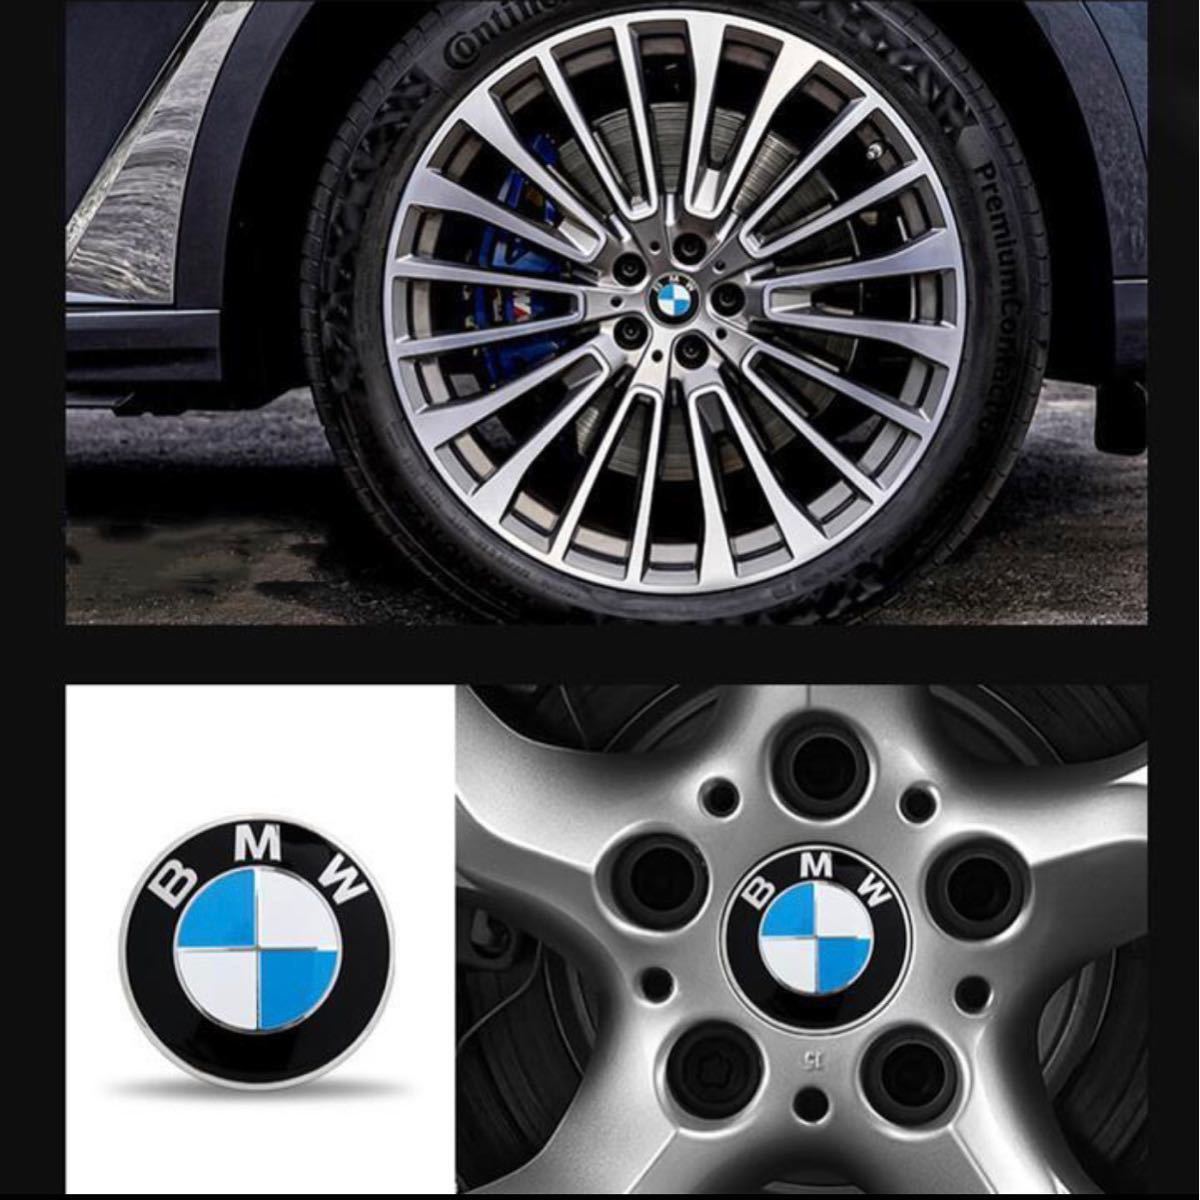 BMW　ホイールセンターキャップ　68mm 新品未使用傷防止フィルム付き【4個】BMW青白_画像2